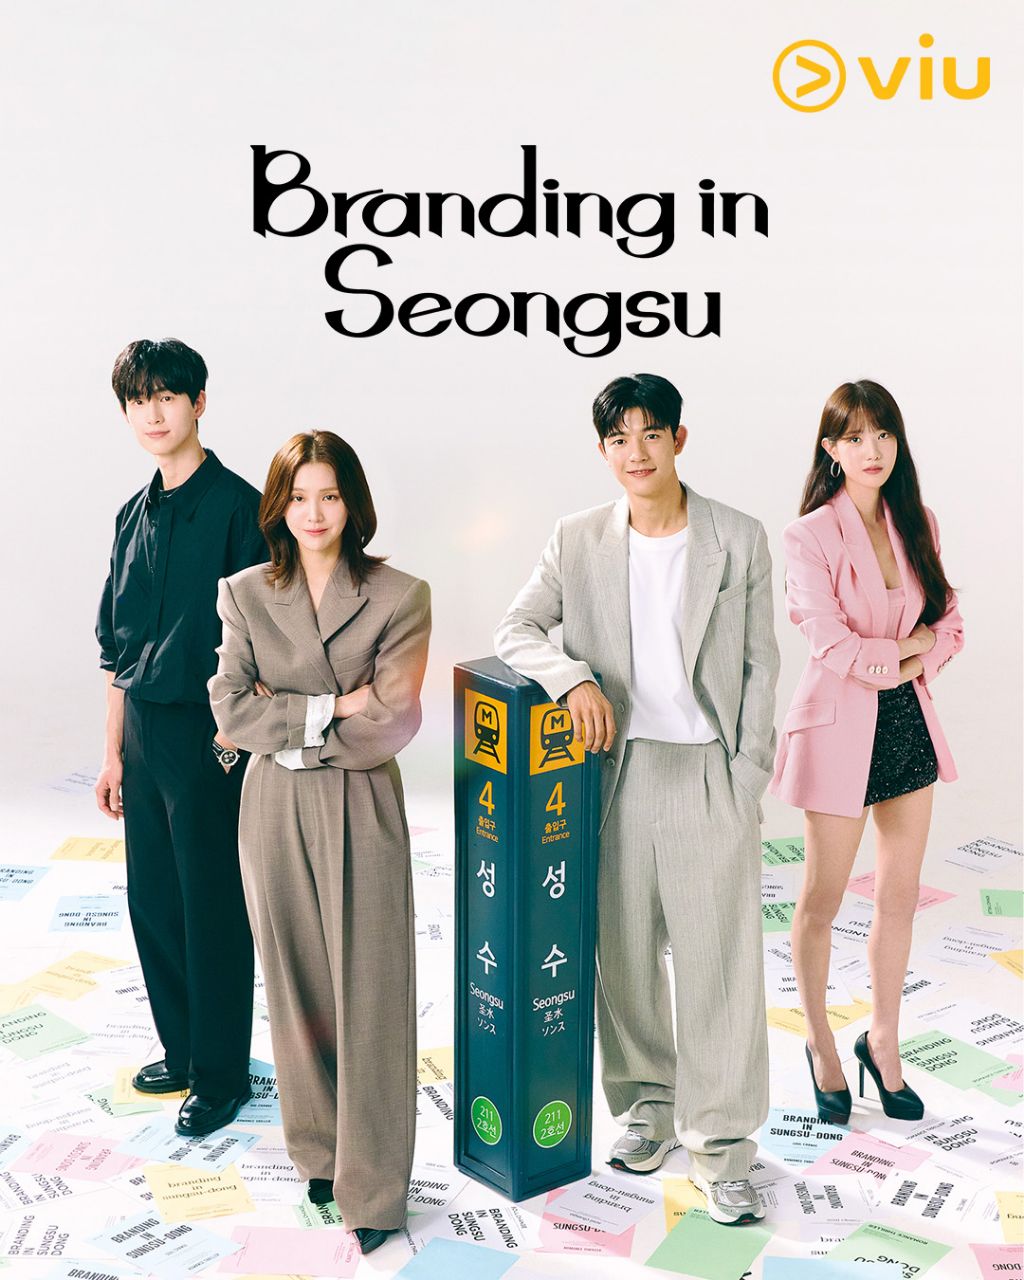 مسلسل العلامة التجارية في سيونغسو Branding in Seongsu الحلقة 18